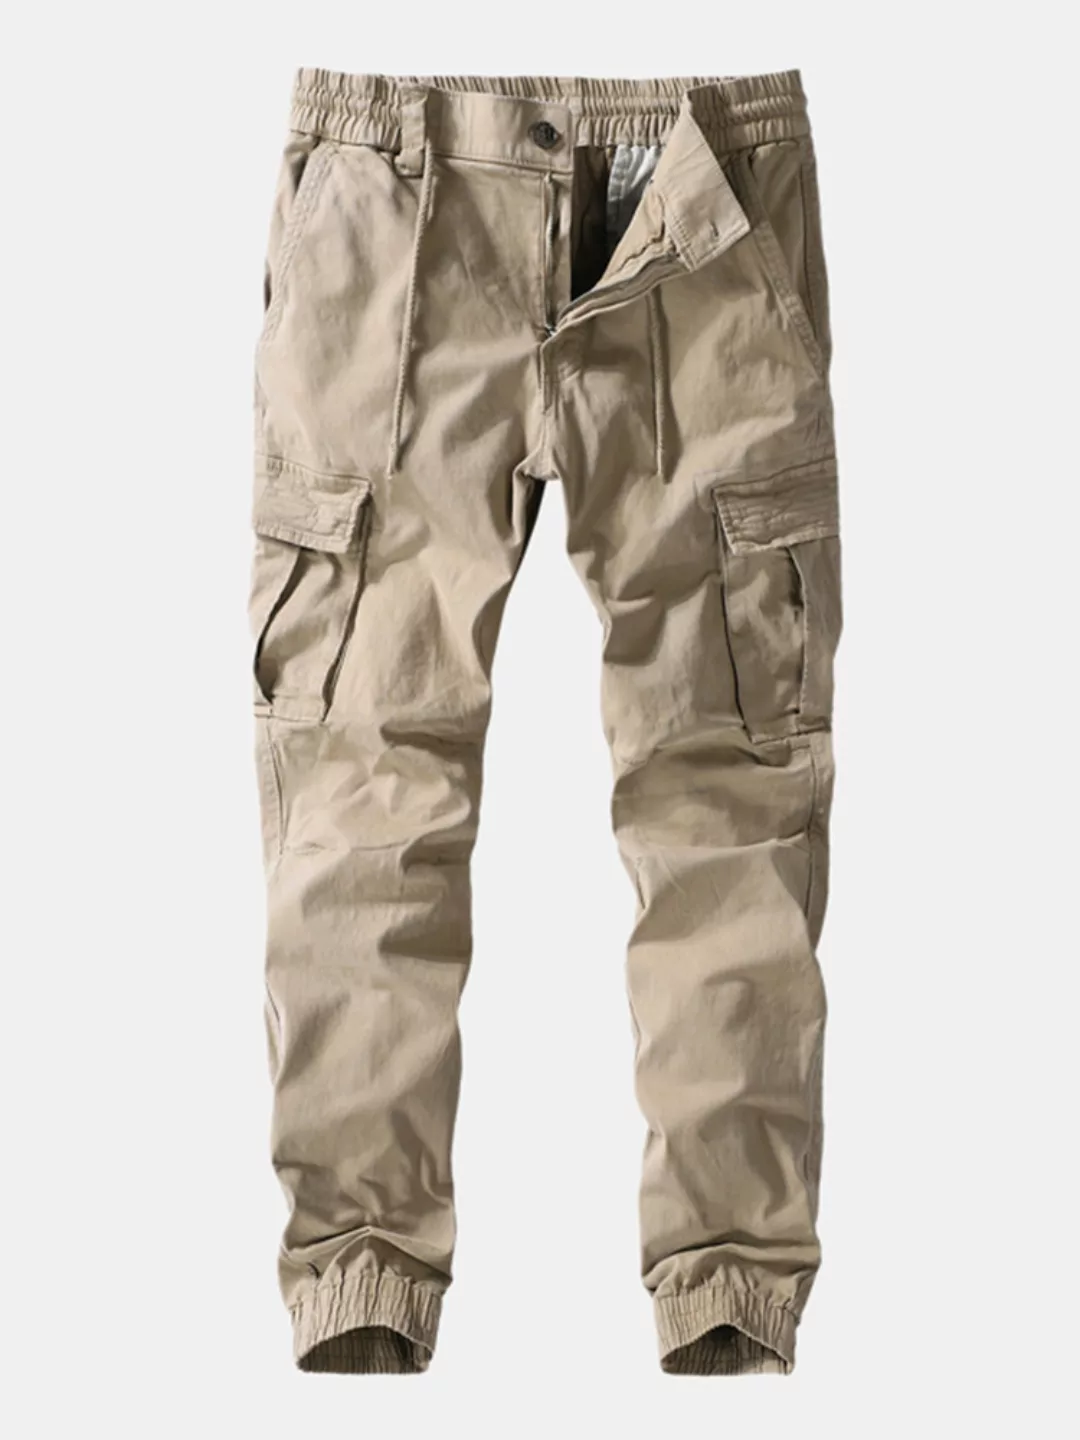 Herren Outdoor Cotton Paratrooper Multi Taschen Knöchel Banded Hosen günstig online kaufen